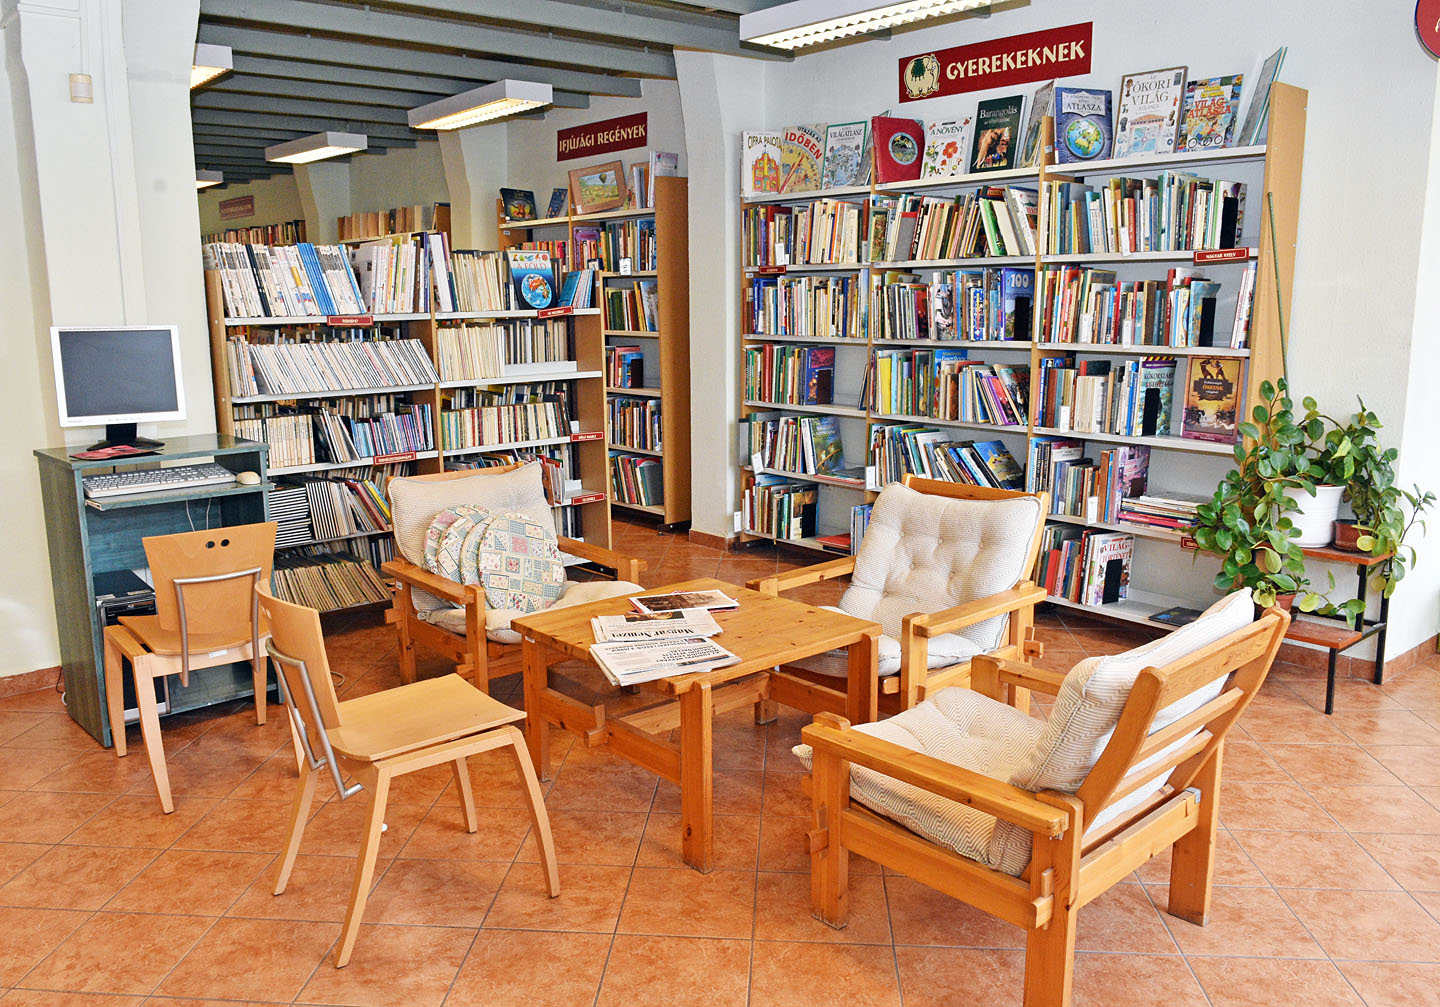 Tagkönyvtárak belső tereiről készült fotók